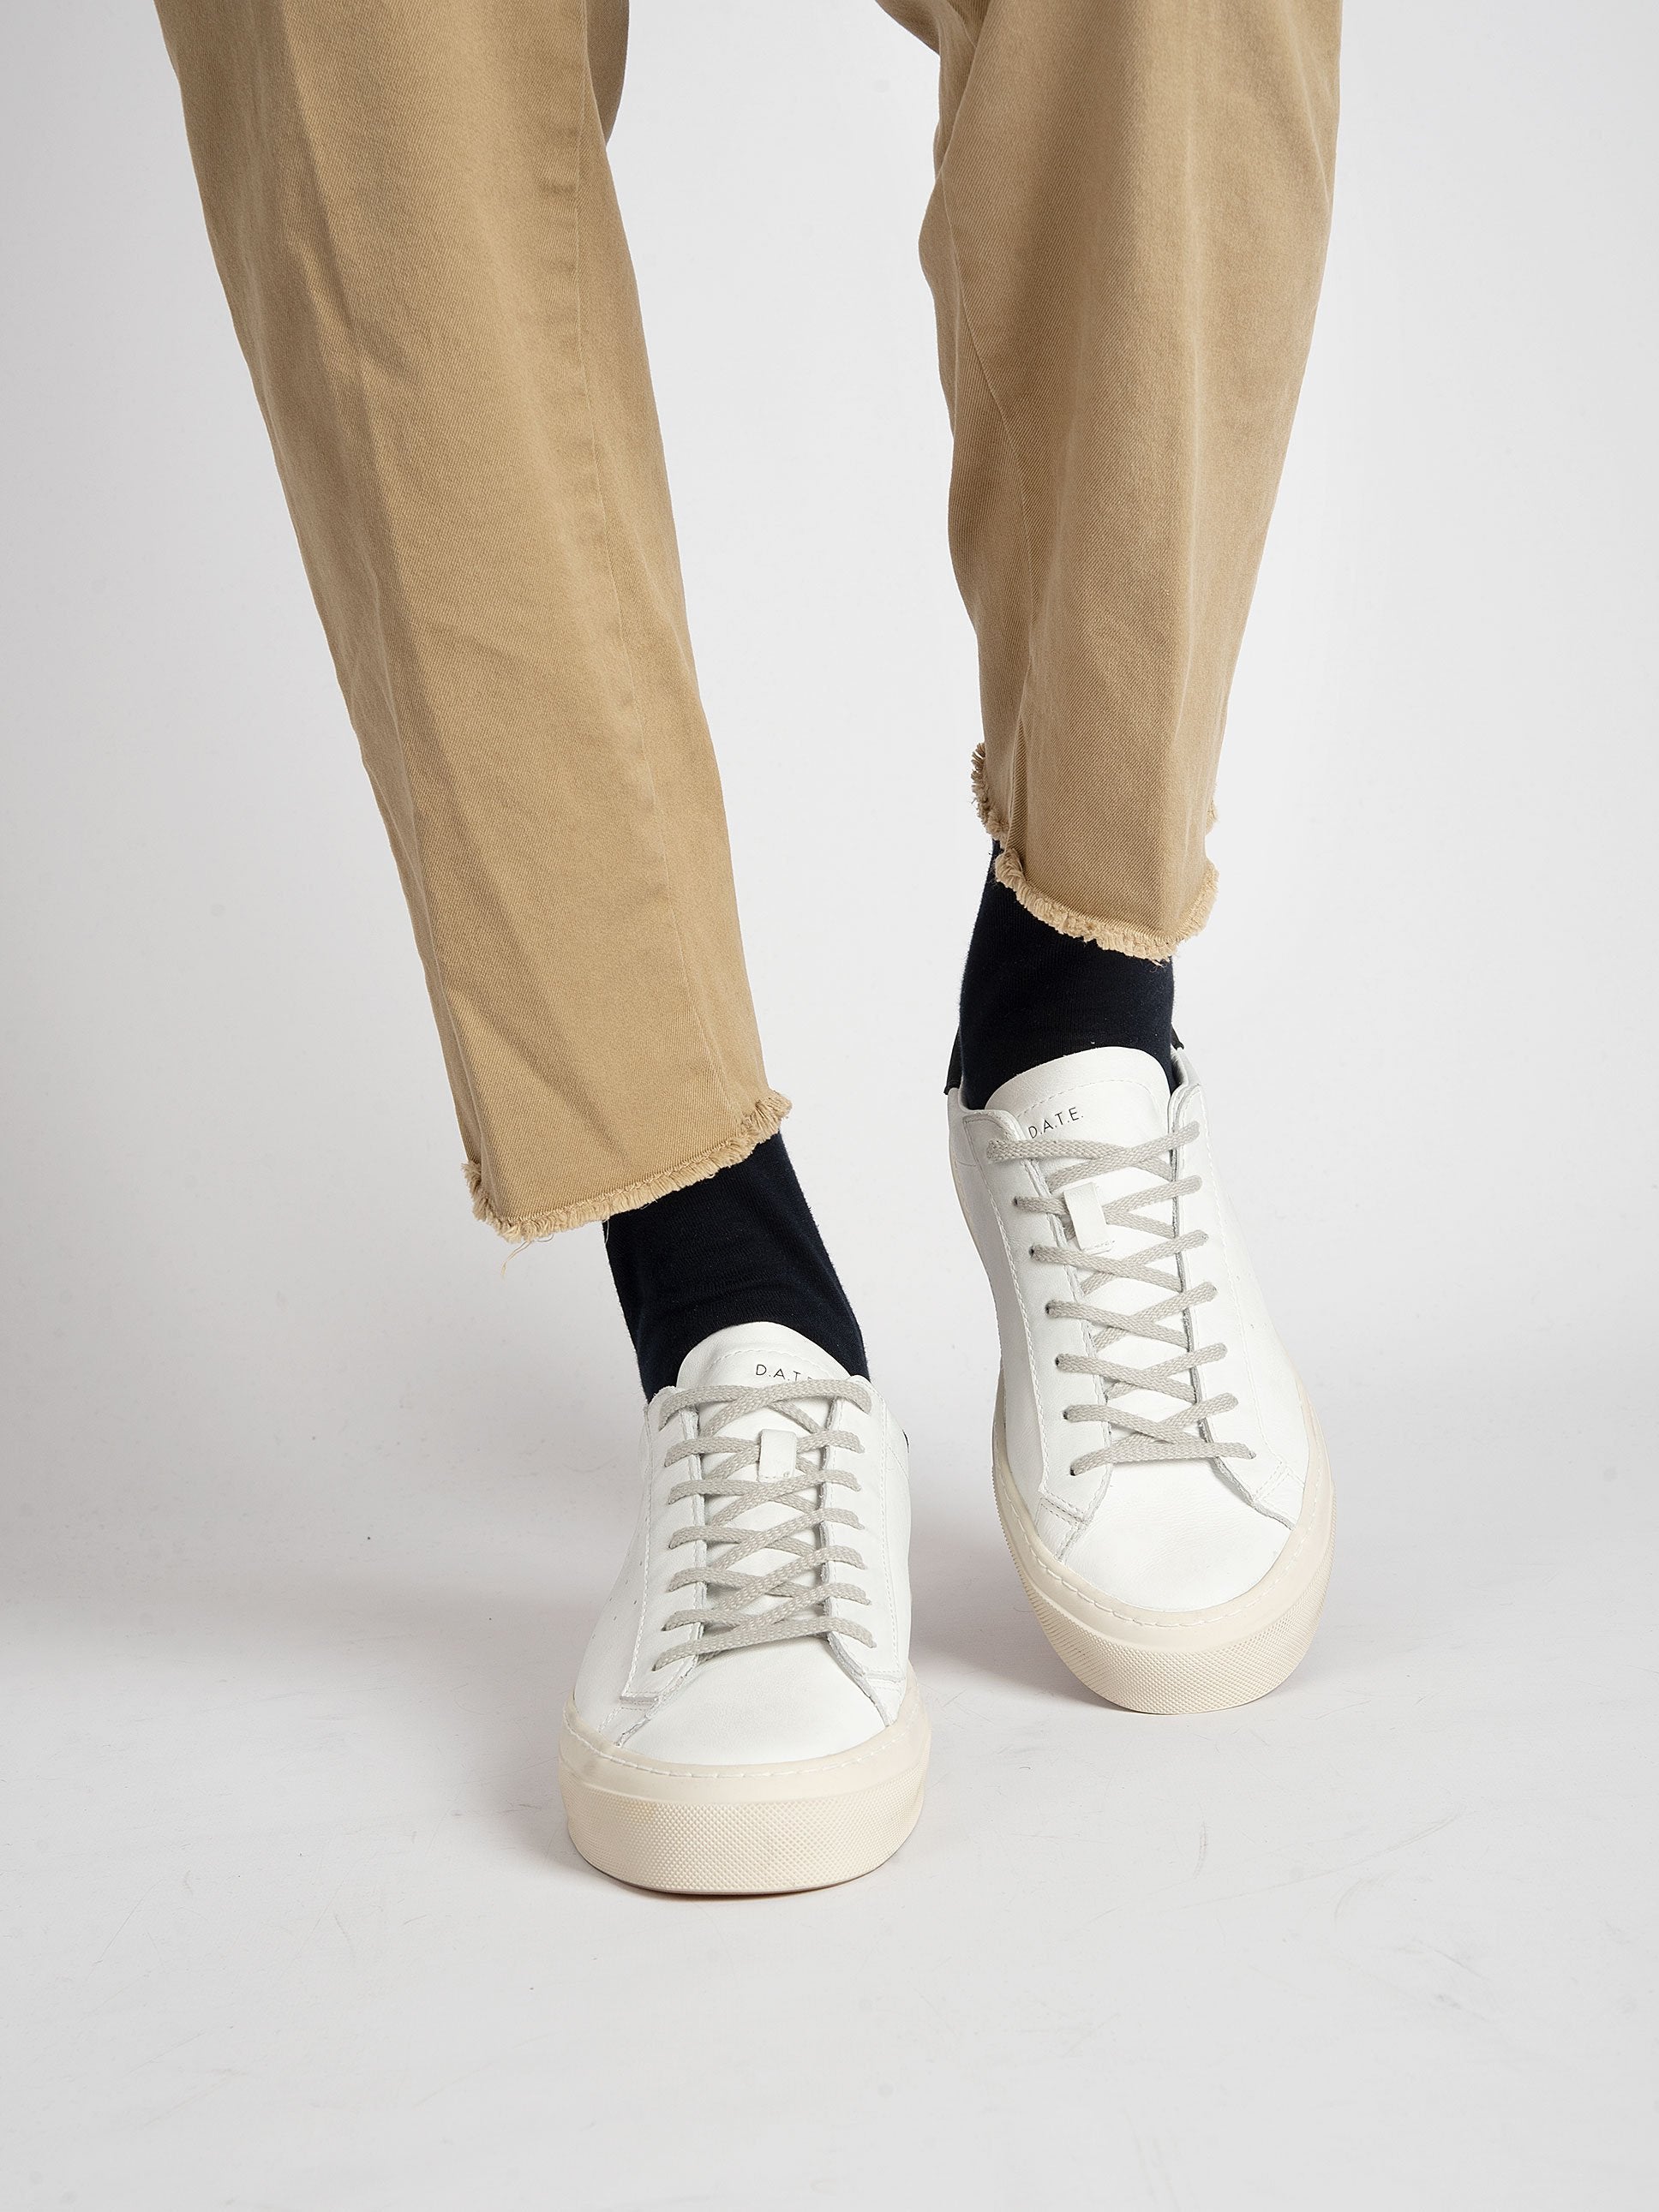 Pantalone 'Mason Gapulsar' - khaki